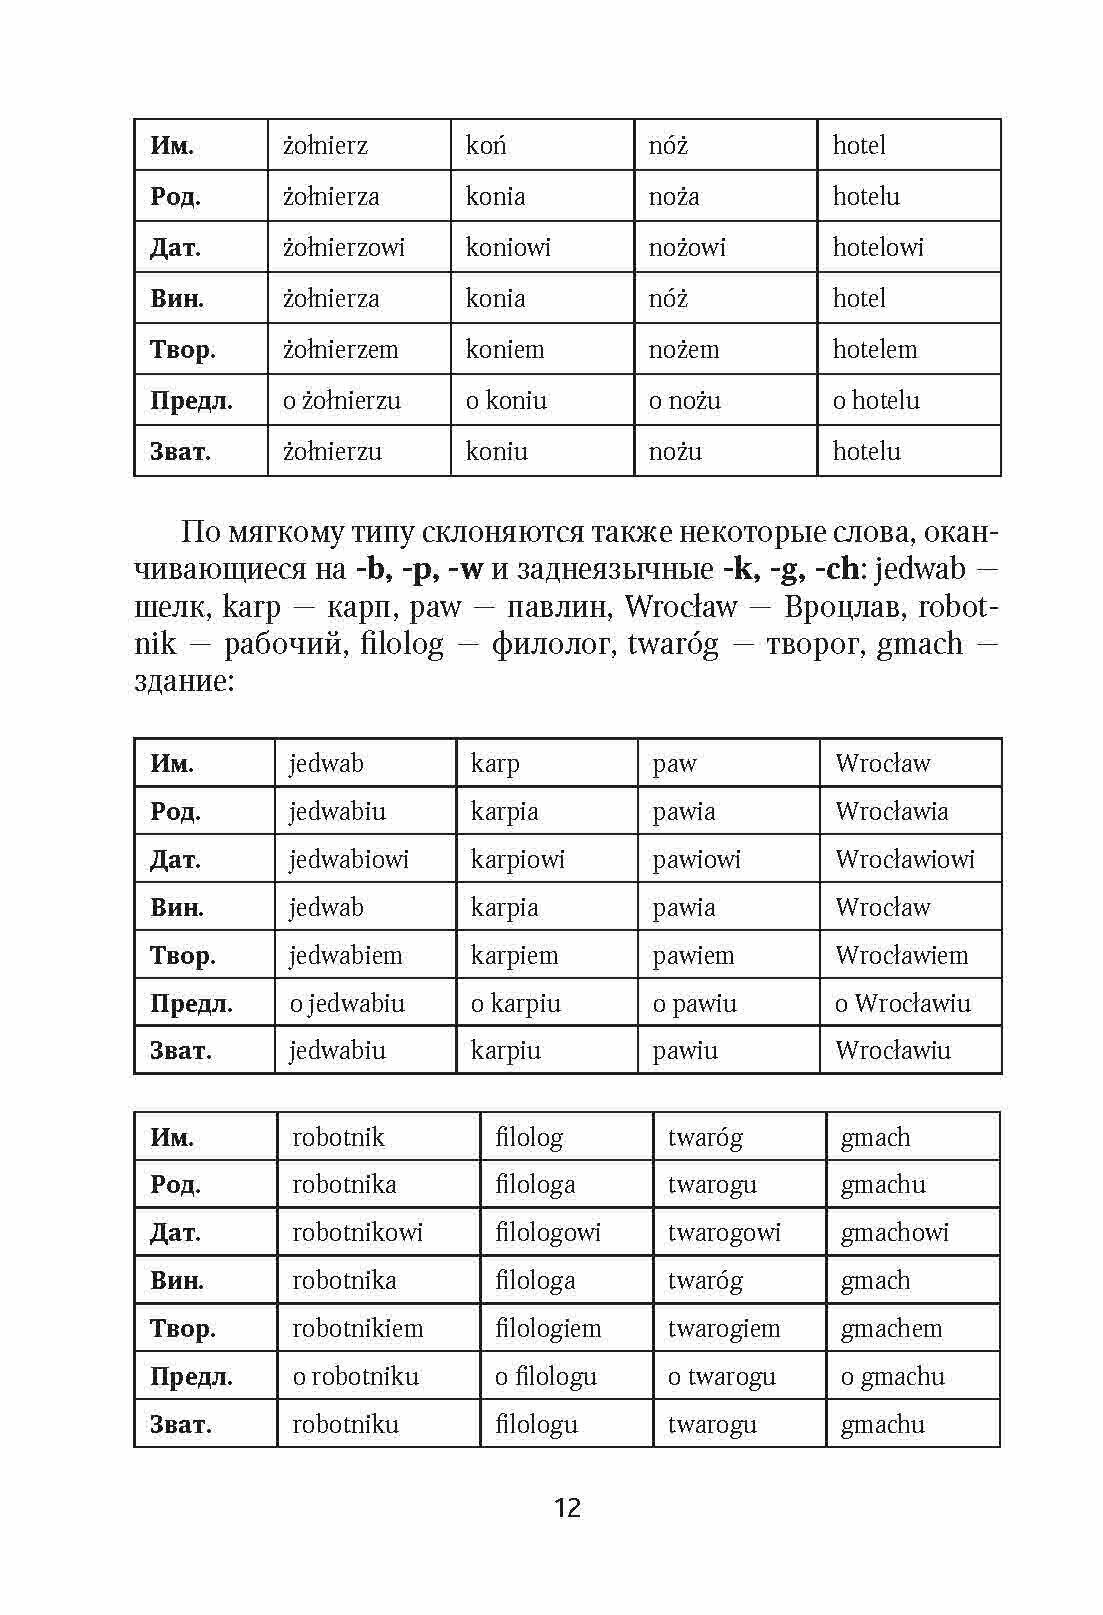 Польская грамматика в таблицах и схемах - фото №10